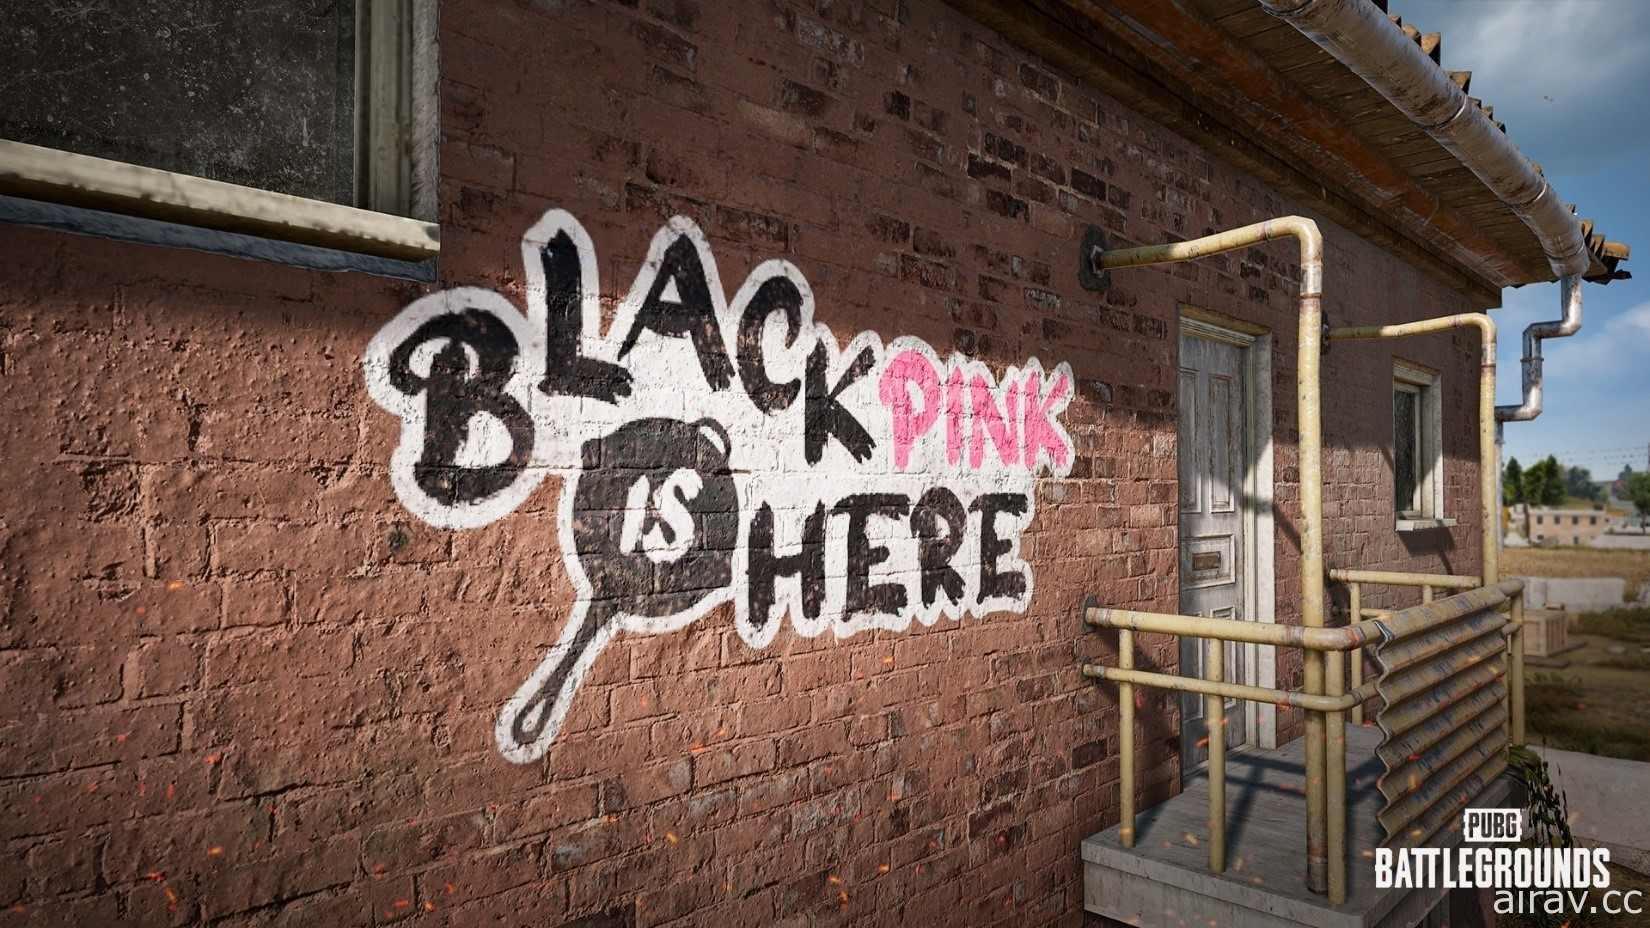 粉紅風暴席捲戰場 《絕地求生》X BLACKPINK 主題合作即日登場